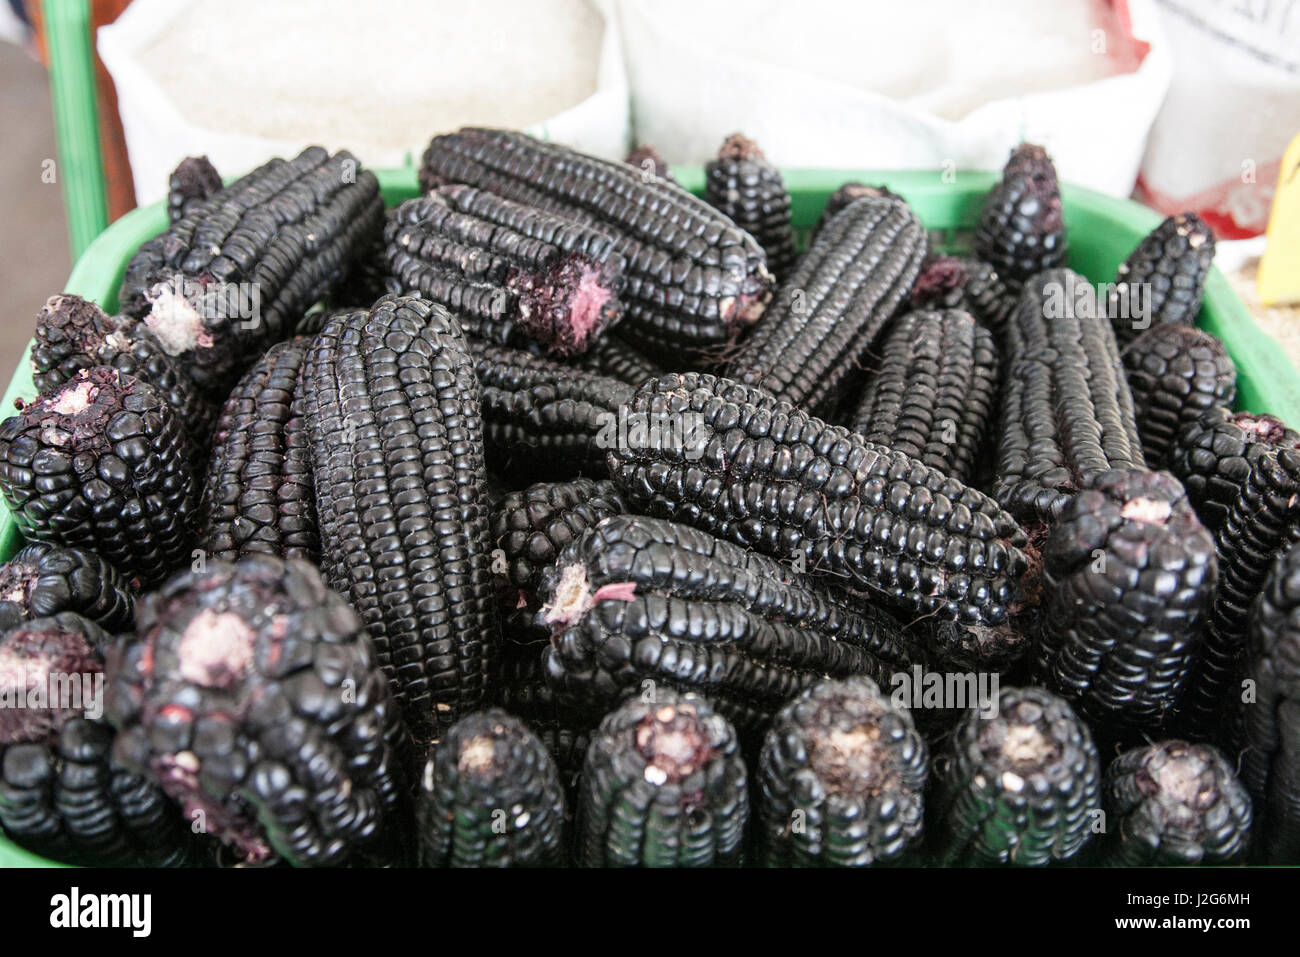 Dieser Mais, fast schwarz in der Farbe, stammt aus vor 2700 Jahren wenn Nit von den Inka entwickelt wurde. Es wird hoch in den peruanischen Anden angebaut und wird verwendet, um ein Getränk namens Chica zu machen. Stockfoto